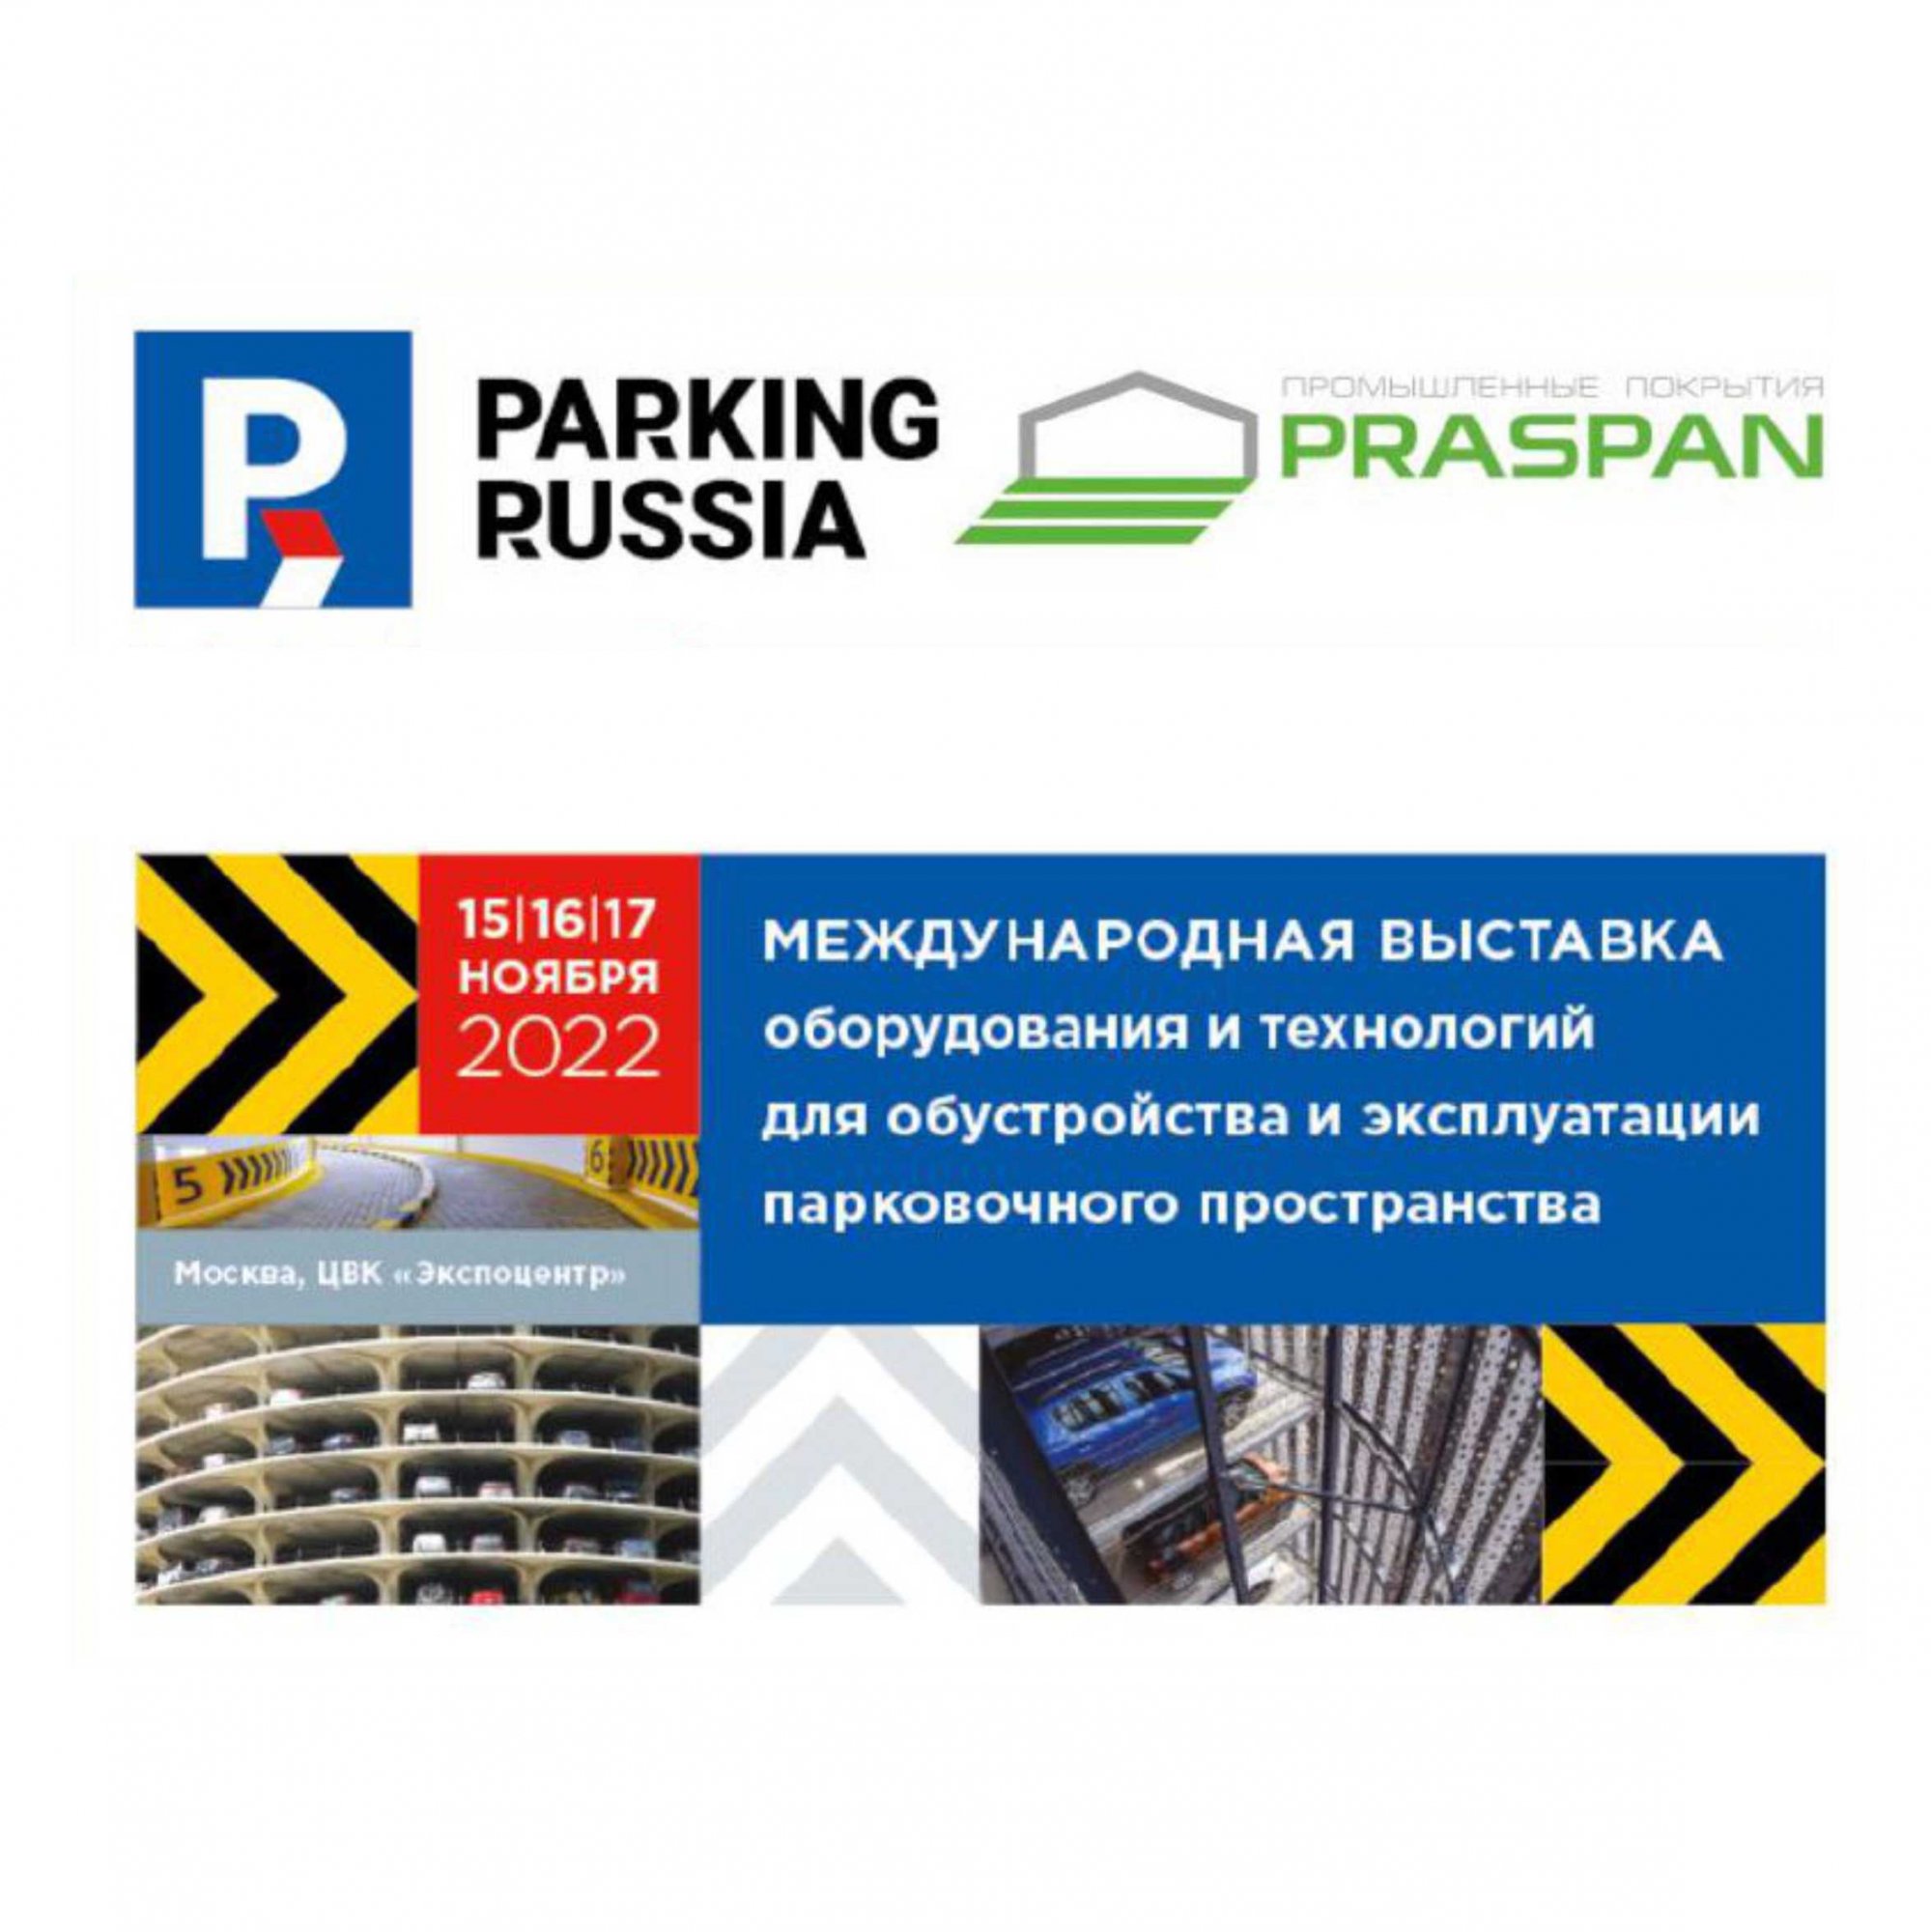 Промокод на бесплатное посещение выставки Parking Russia